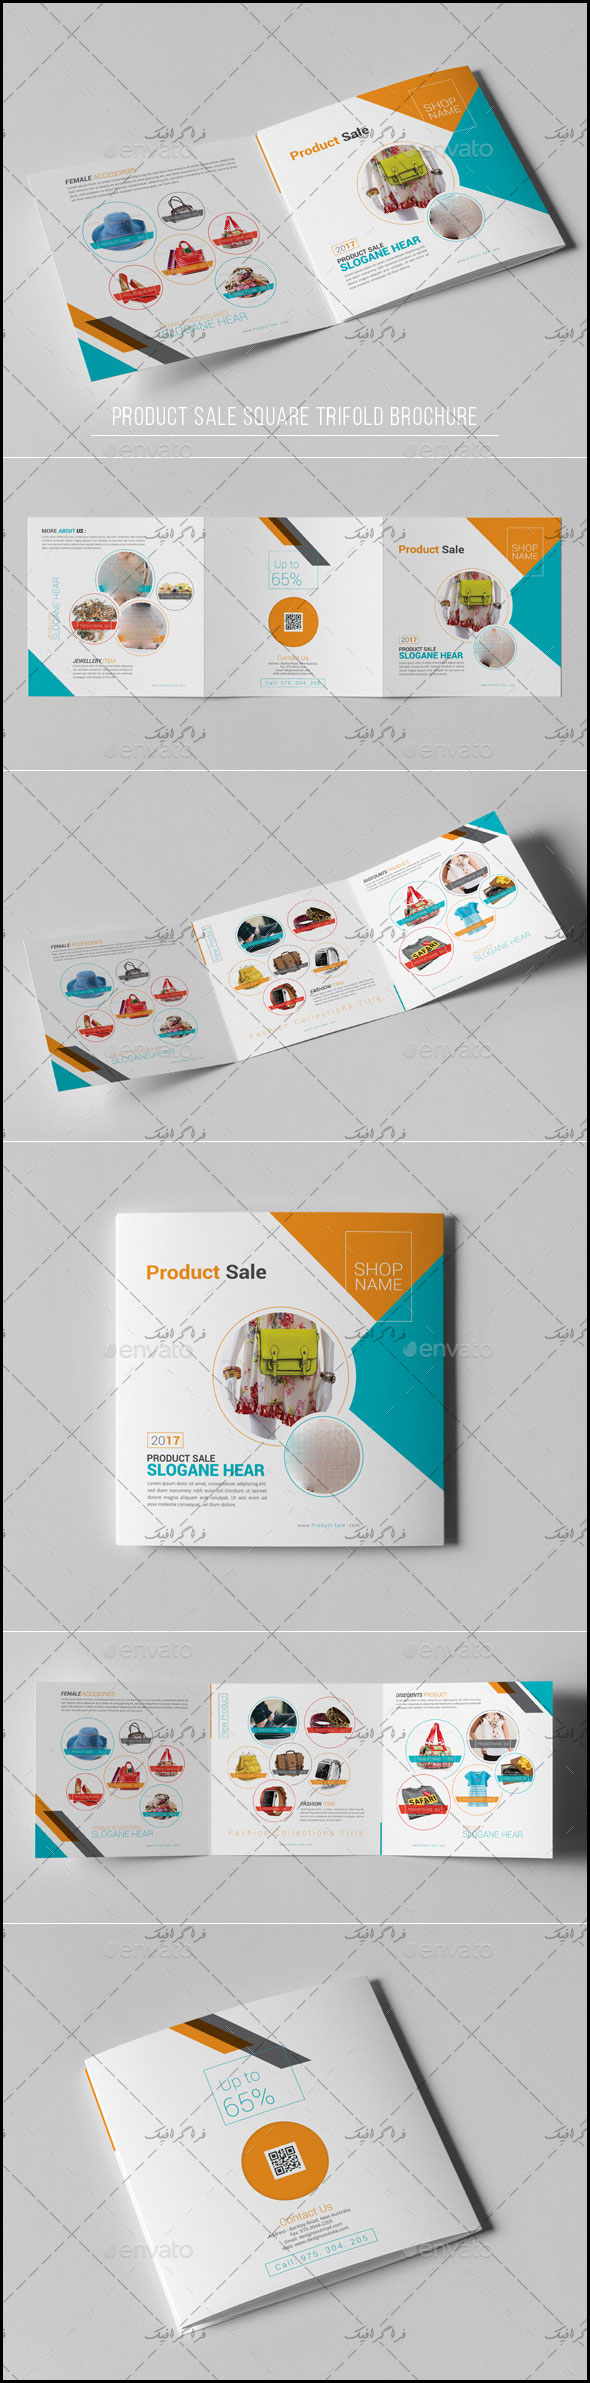 دانلود فایل لایه باز فتوشاپ بروشور مربعی فروش محصول